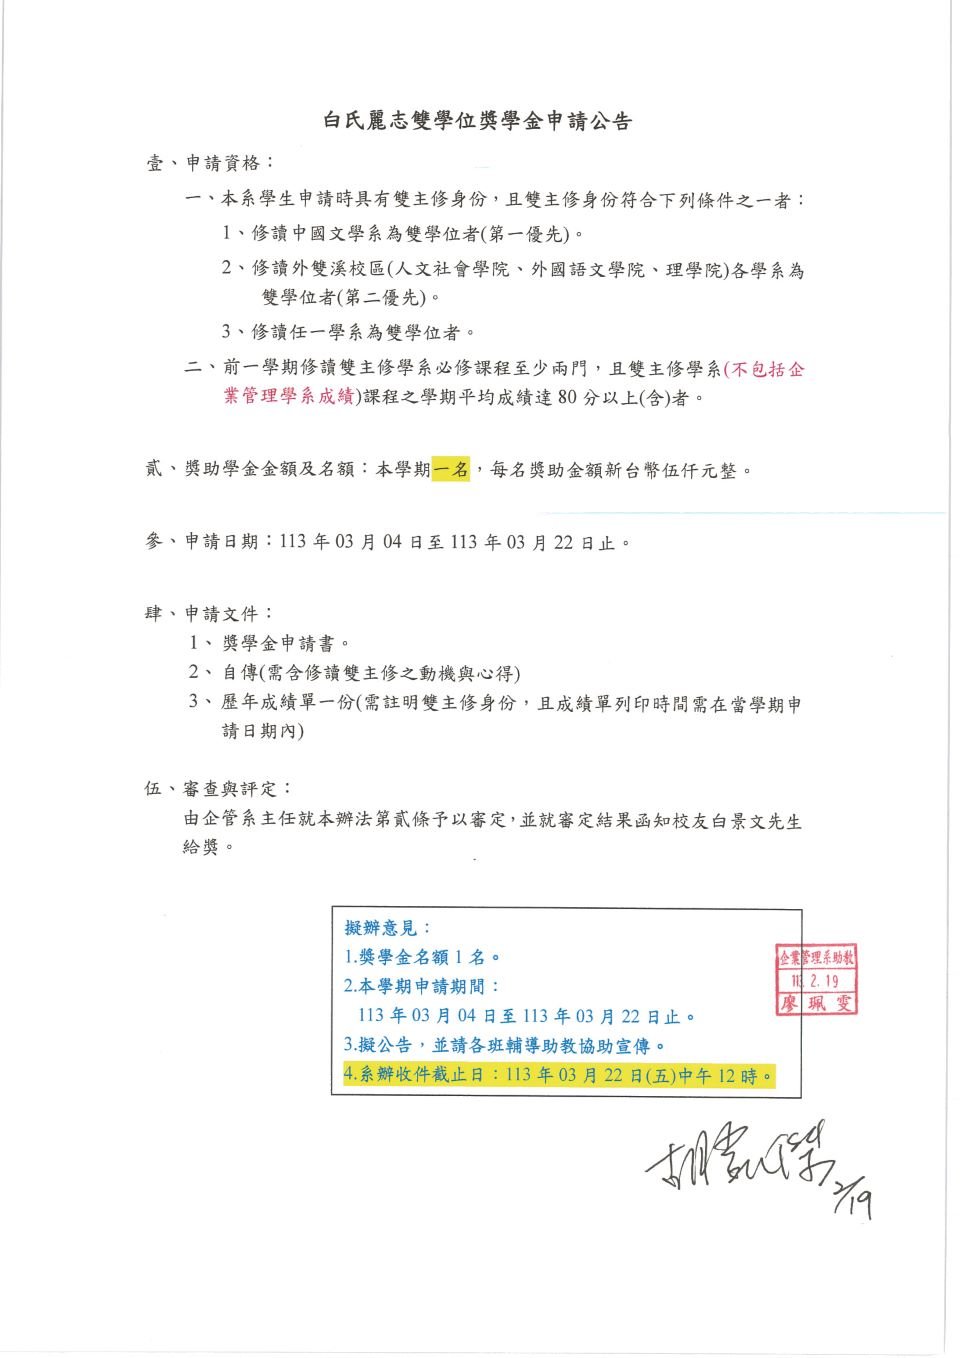 1122-白氏麗志雙學位獎學金_頁面_1